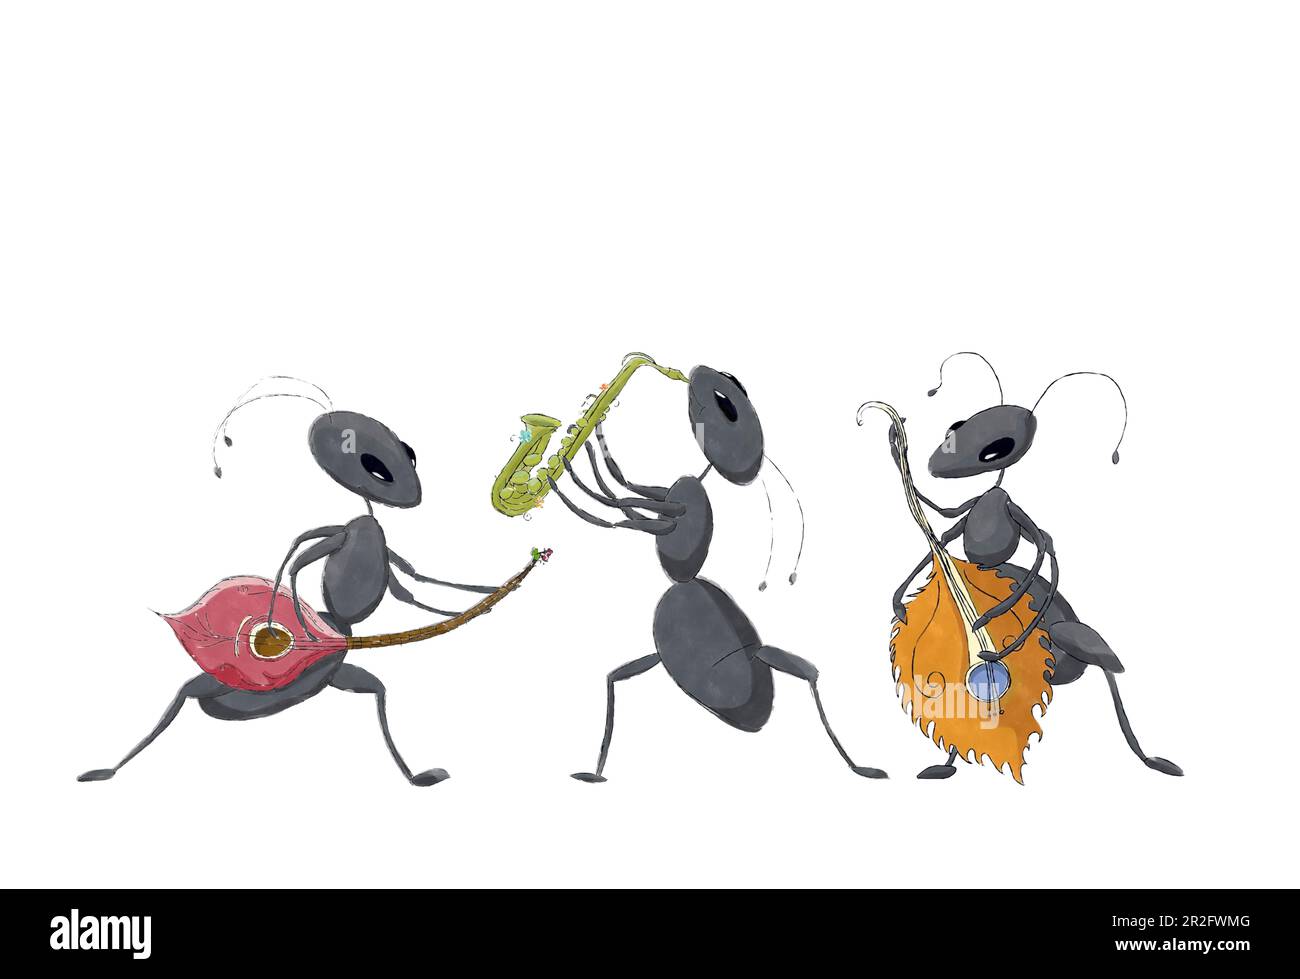 Aquarelle esquisse fantaisie dessin de trois fourmis jouant de la musique, livre dessins de personnages isolés sur fond blanc Banque D'Images